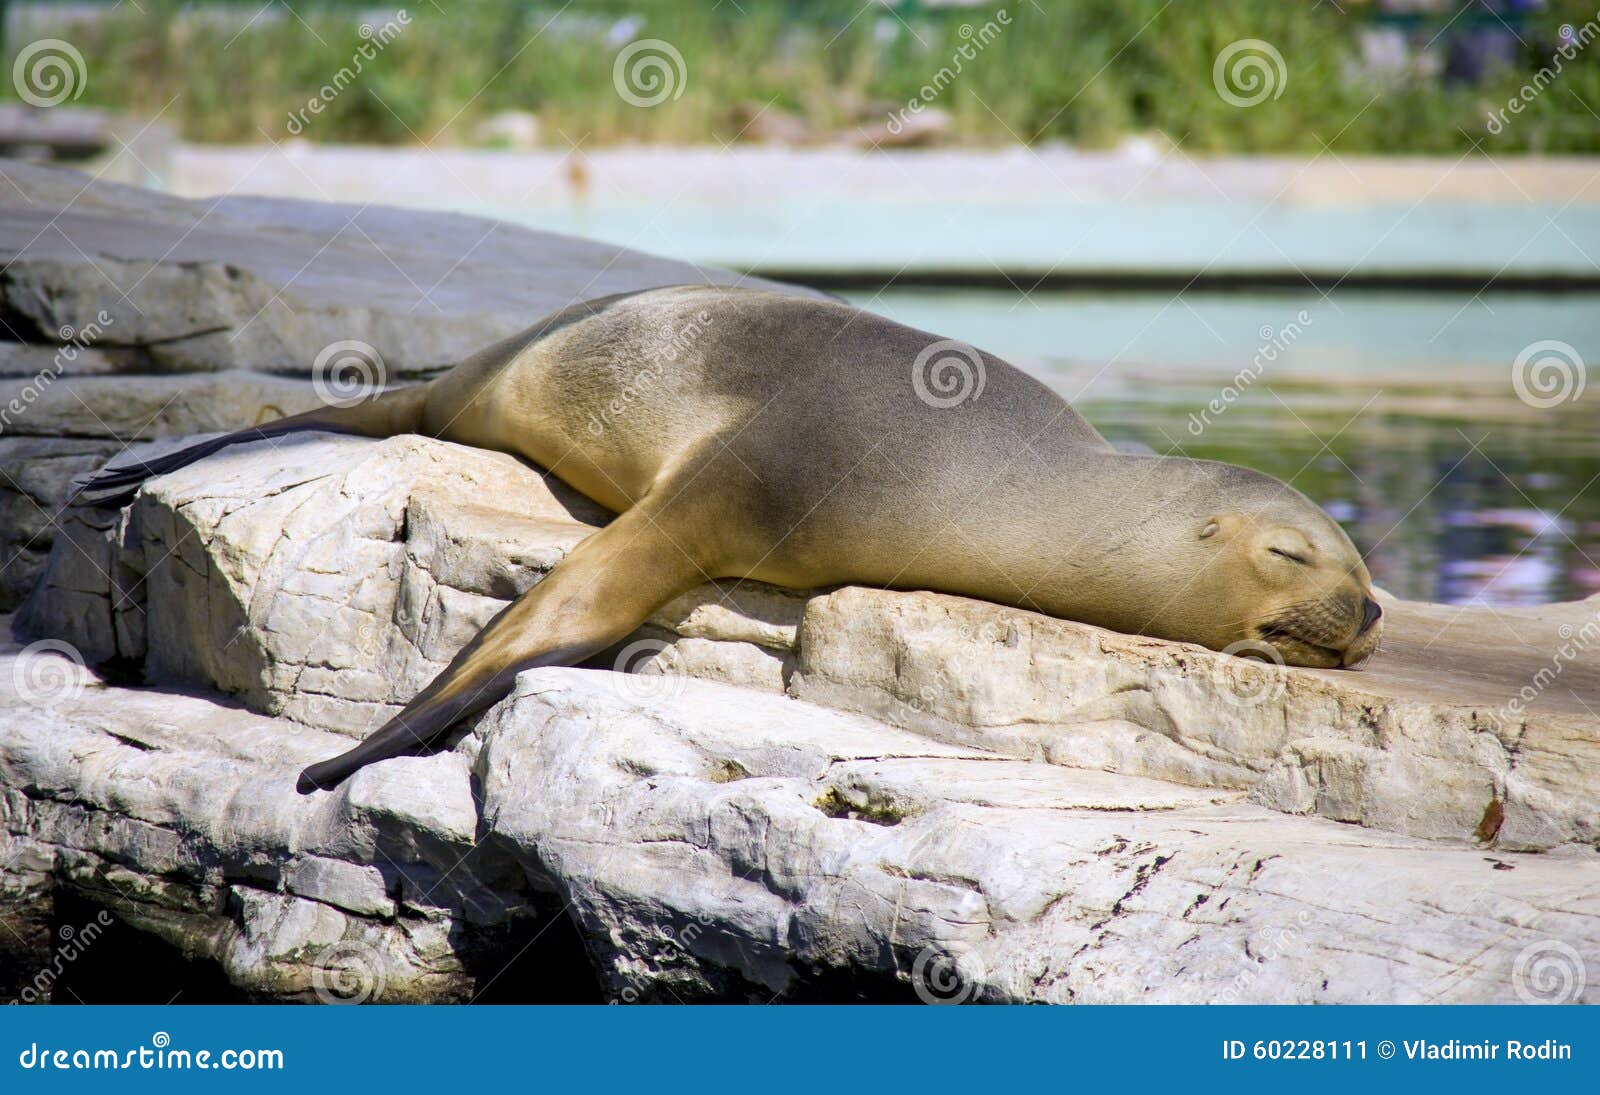 fur seal mammal pinniped vertebrate predator